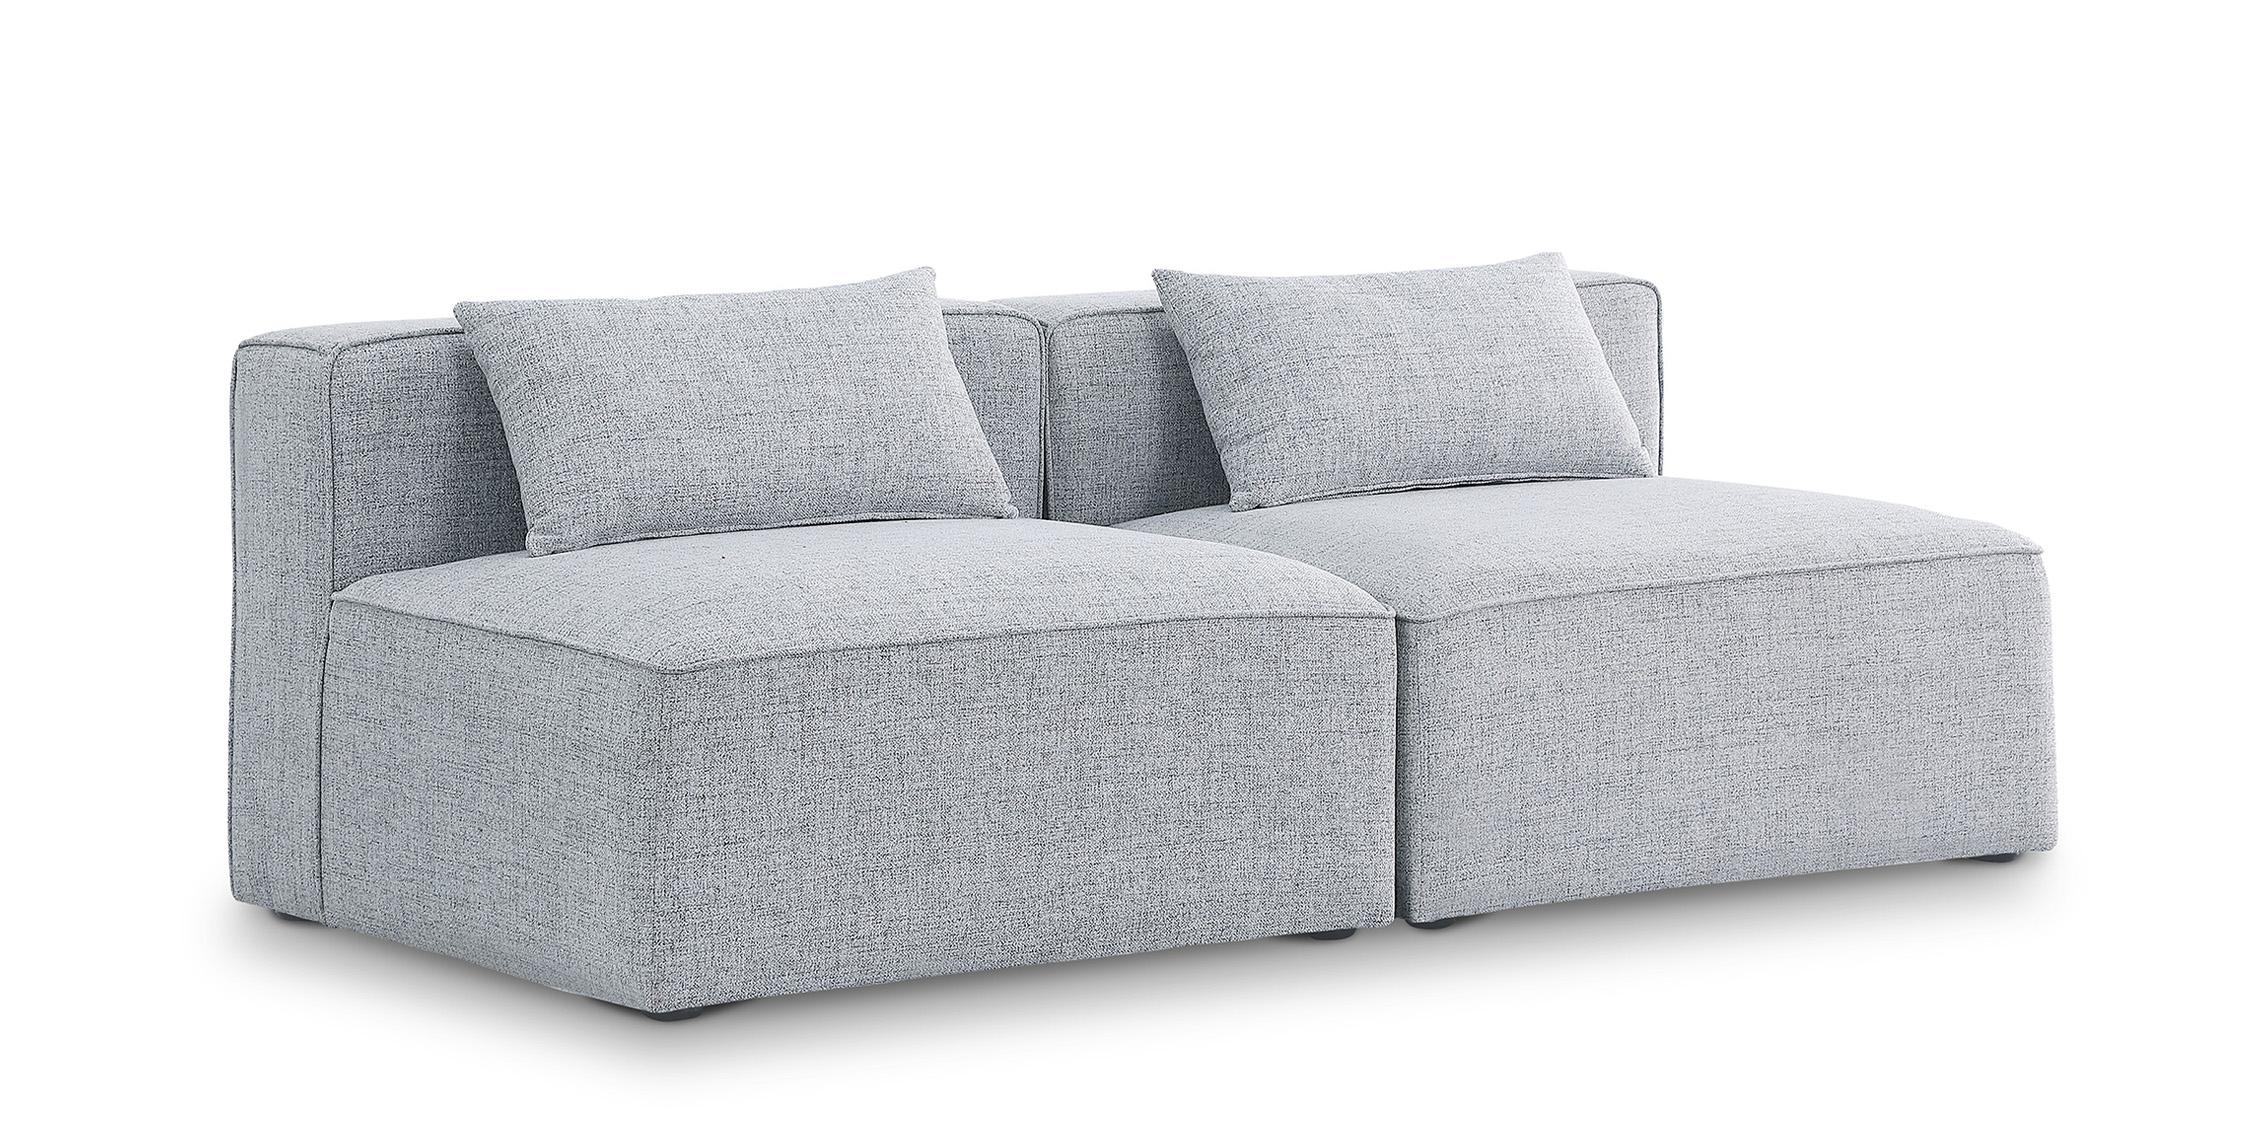 Contemporary, Modern Modular Sofa CUBE 630Grey-S72A 630Grey-S72A in Gray Linen